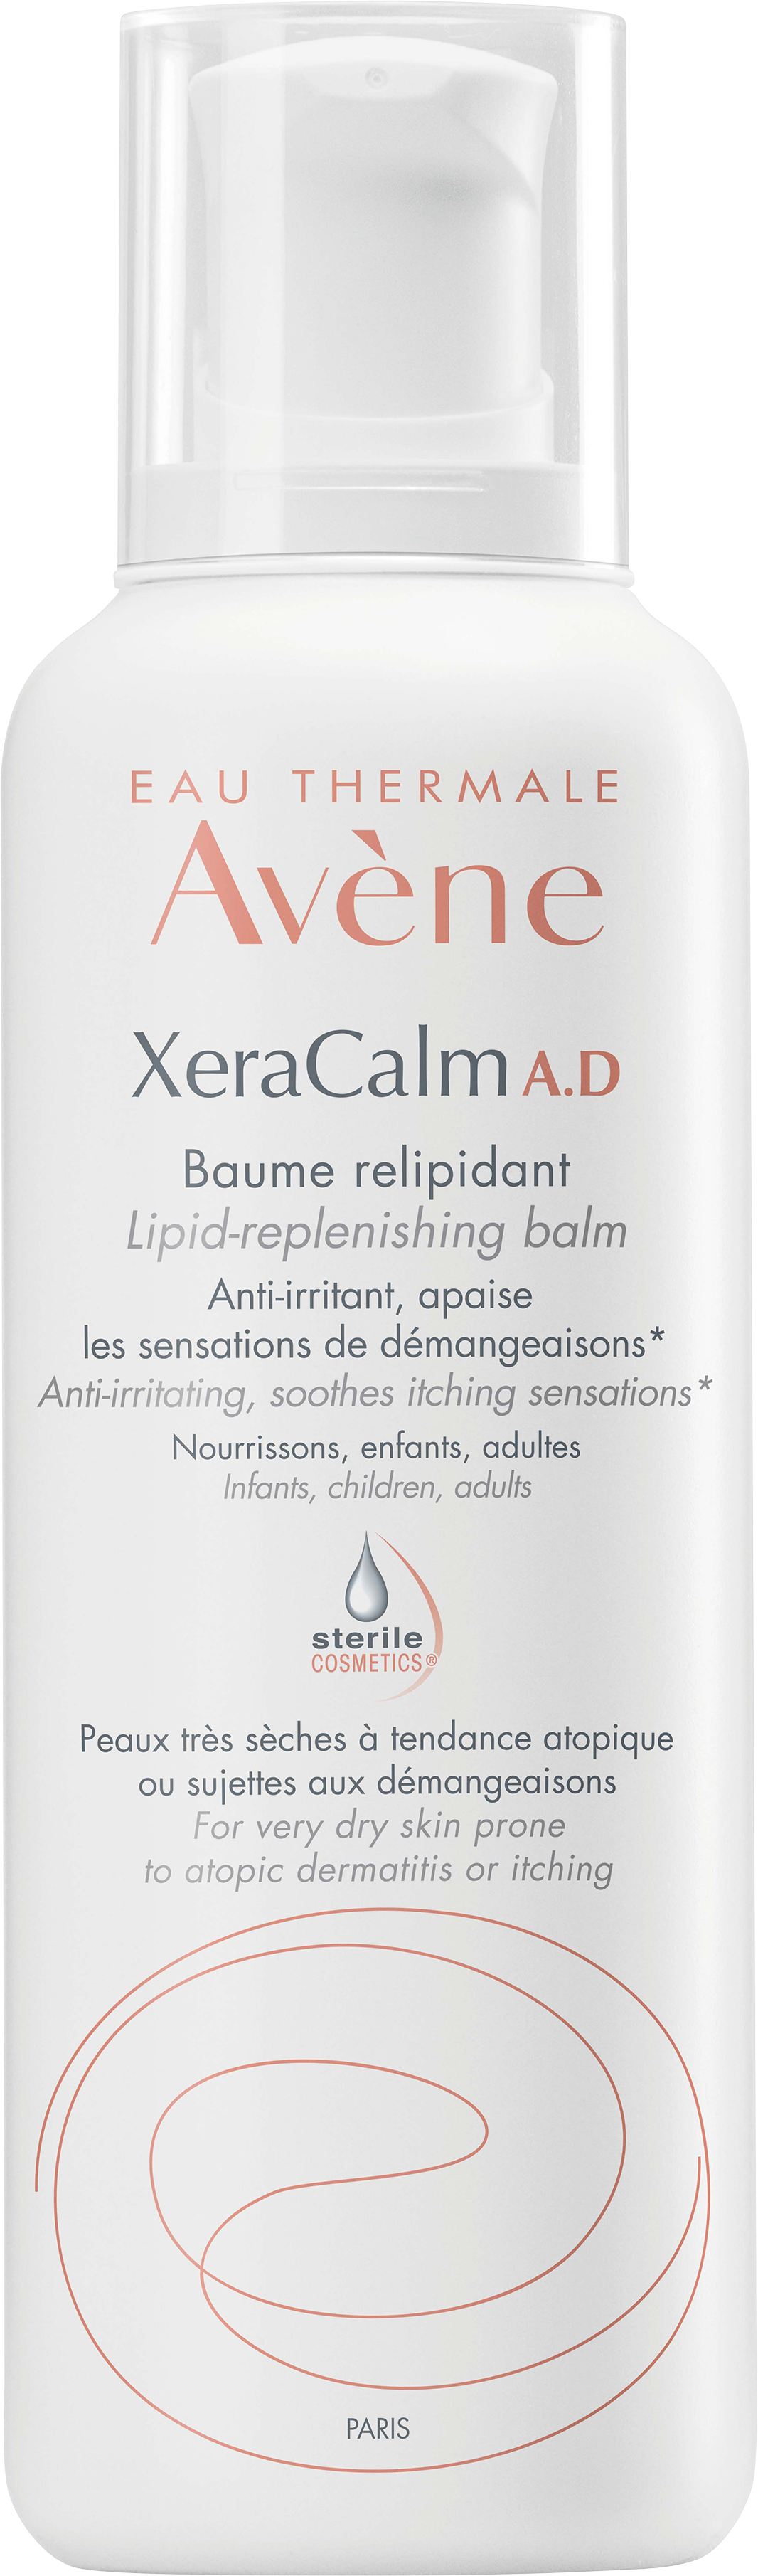 Xeracalm A.D baume relipidant Avène - flacon de 400 ml